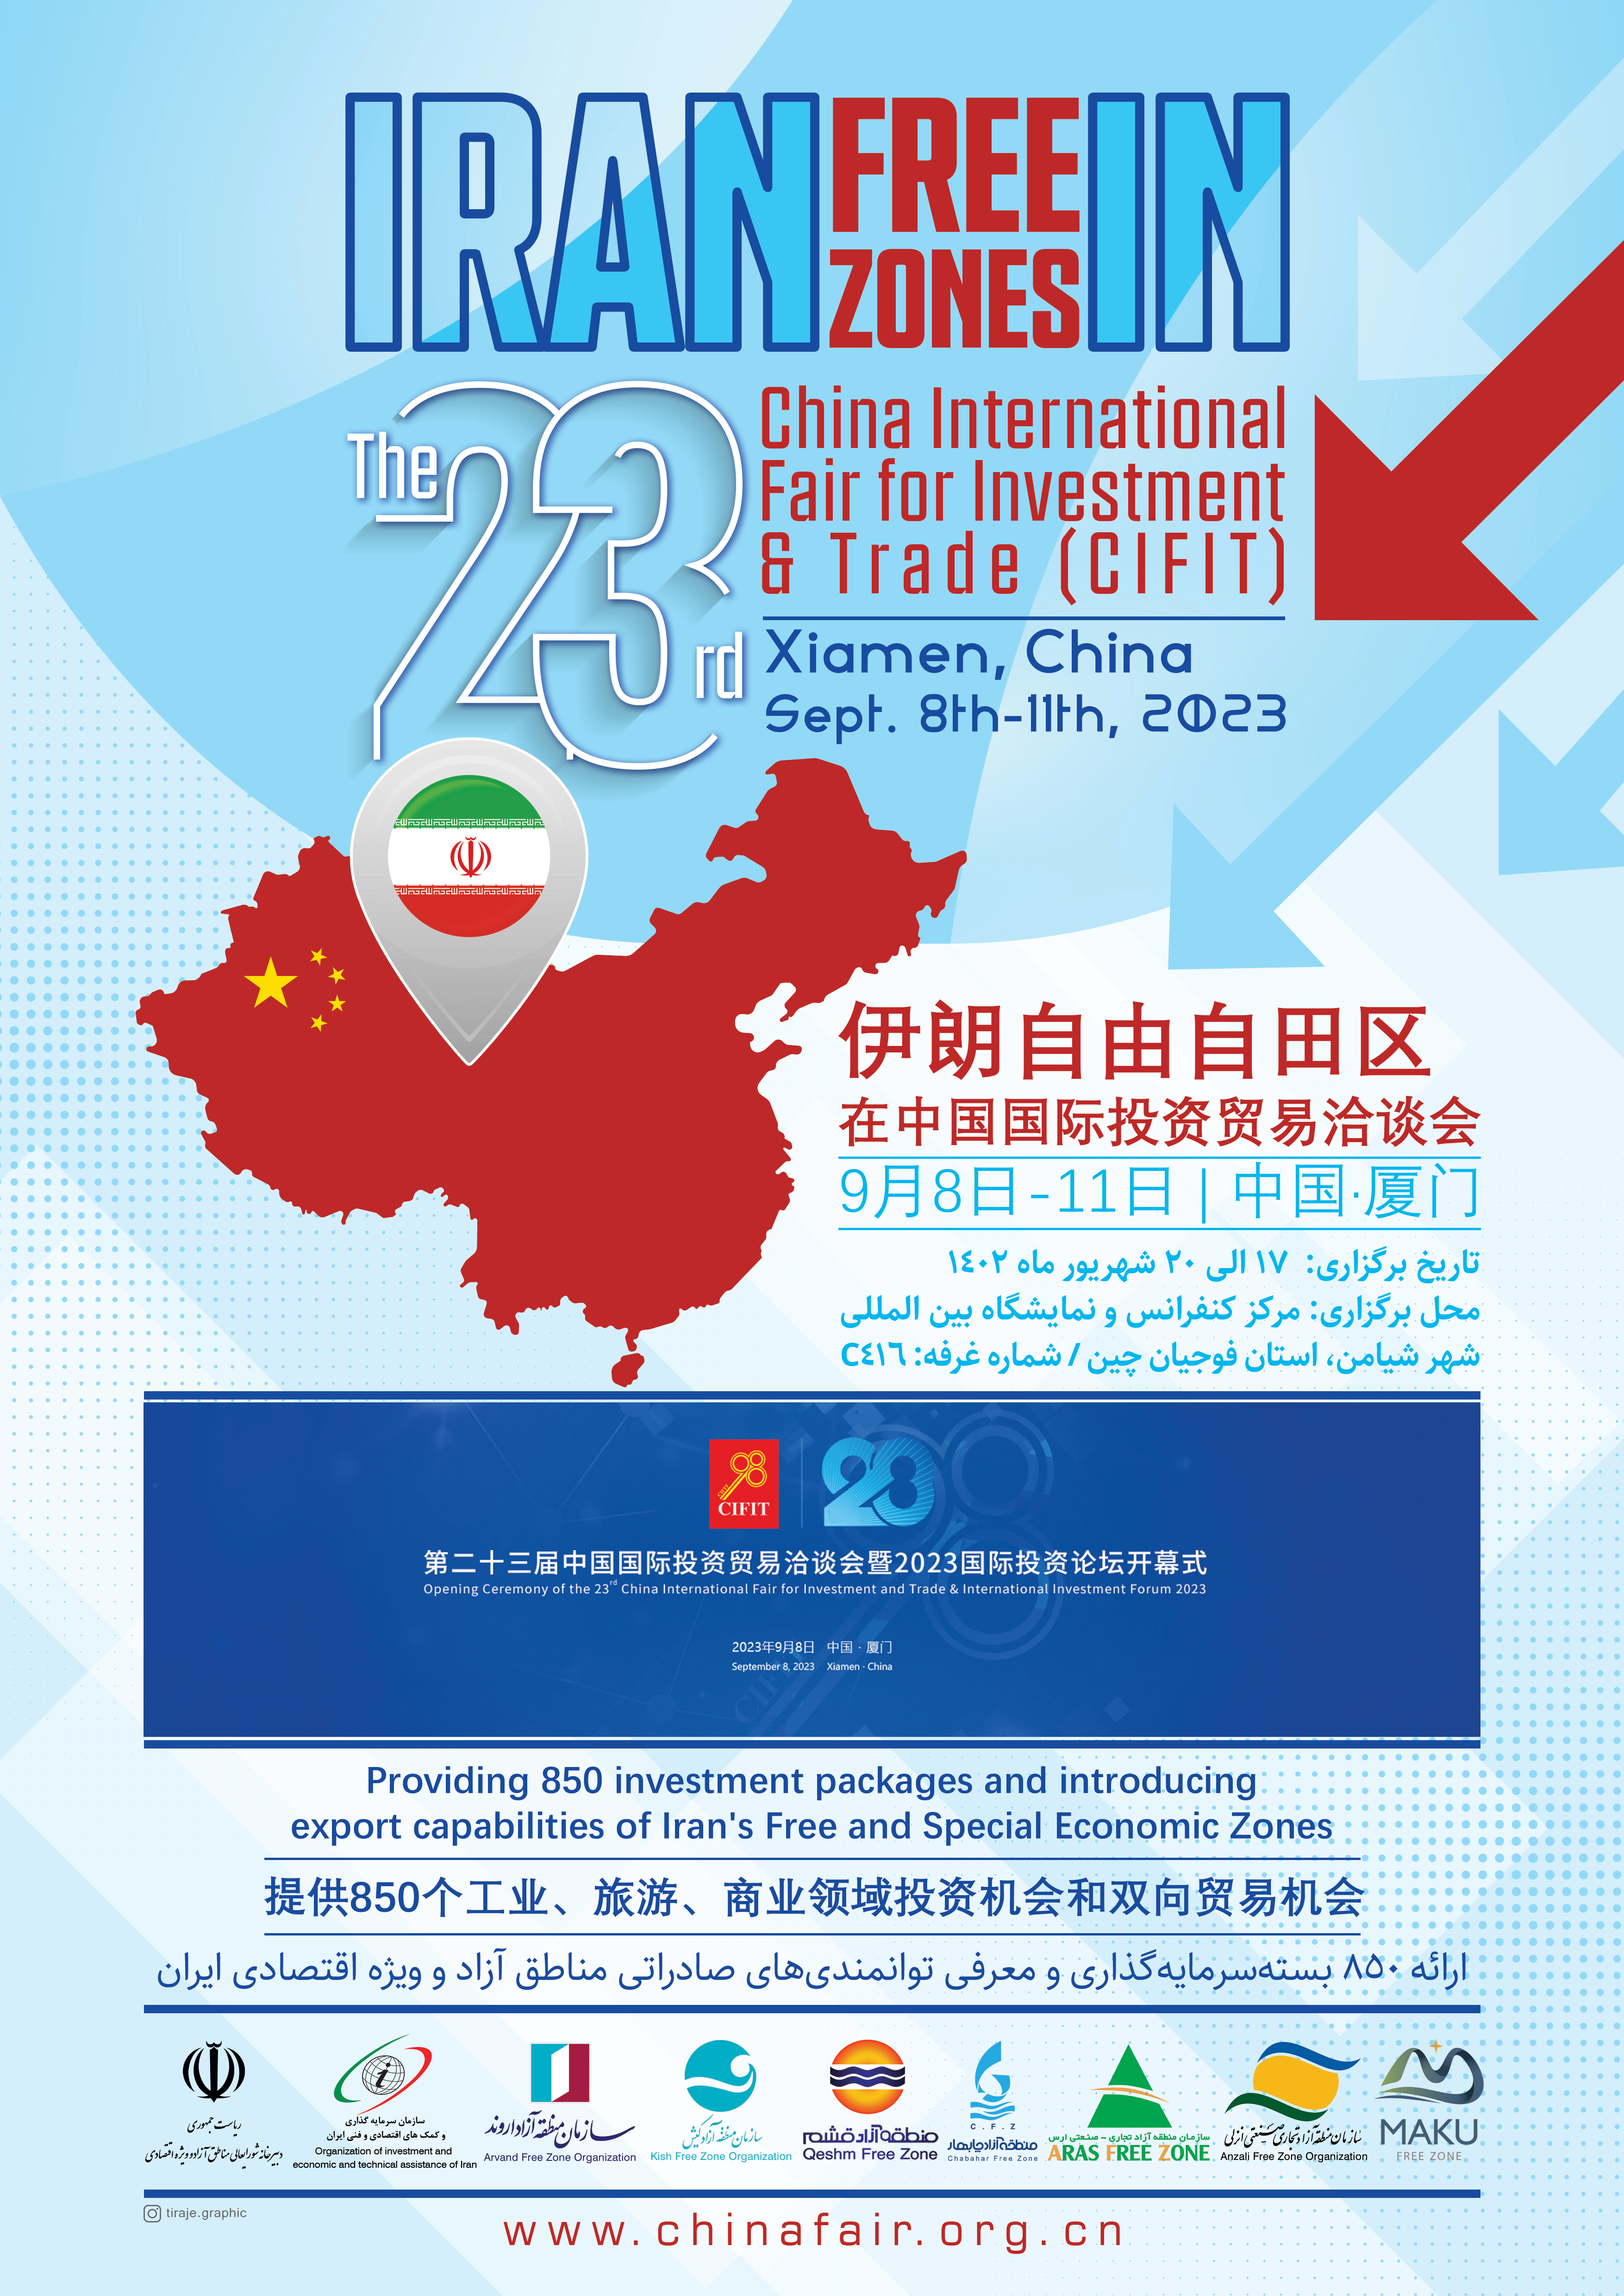 تجارت گردان | مناطق آزاد، در راس هیئت اعزامی جمهوری اسلامی ایران برای شرکت در رویداد بین المللی CIFIT چین